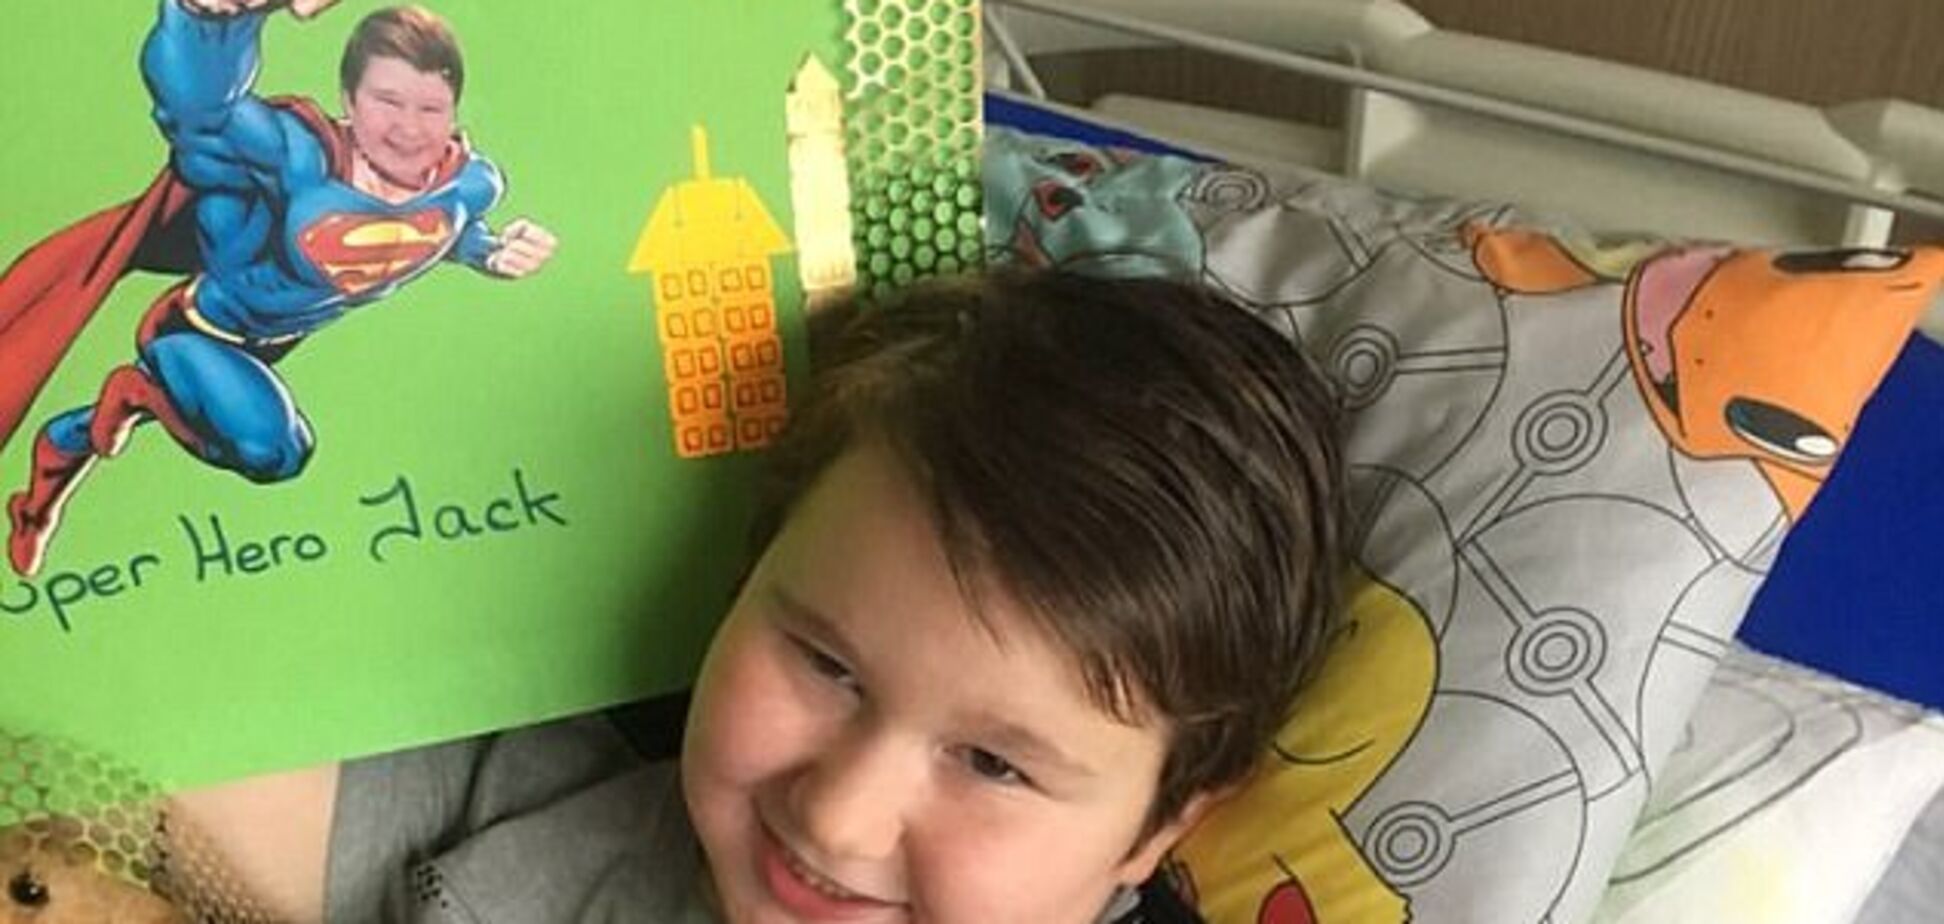 Хотел, чтобы мама убила: больной аутизмом мальчик оставил жуткую записку